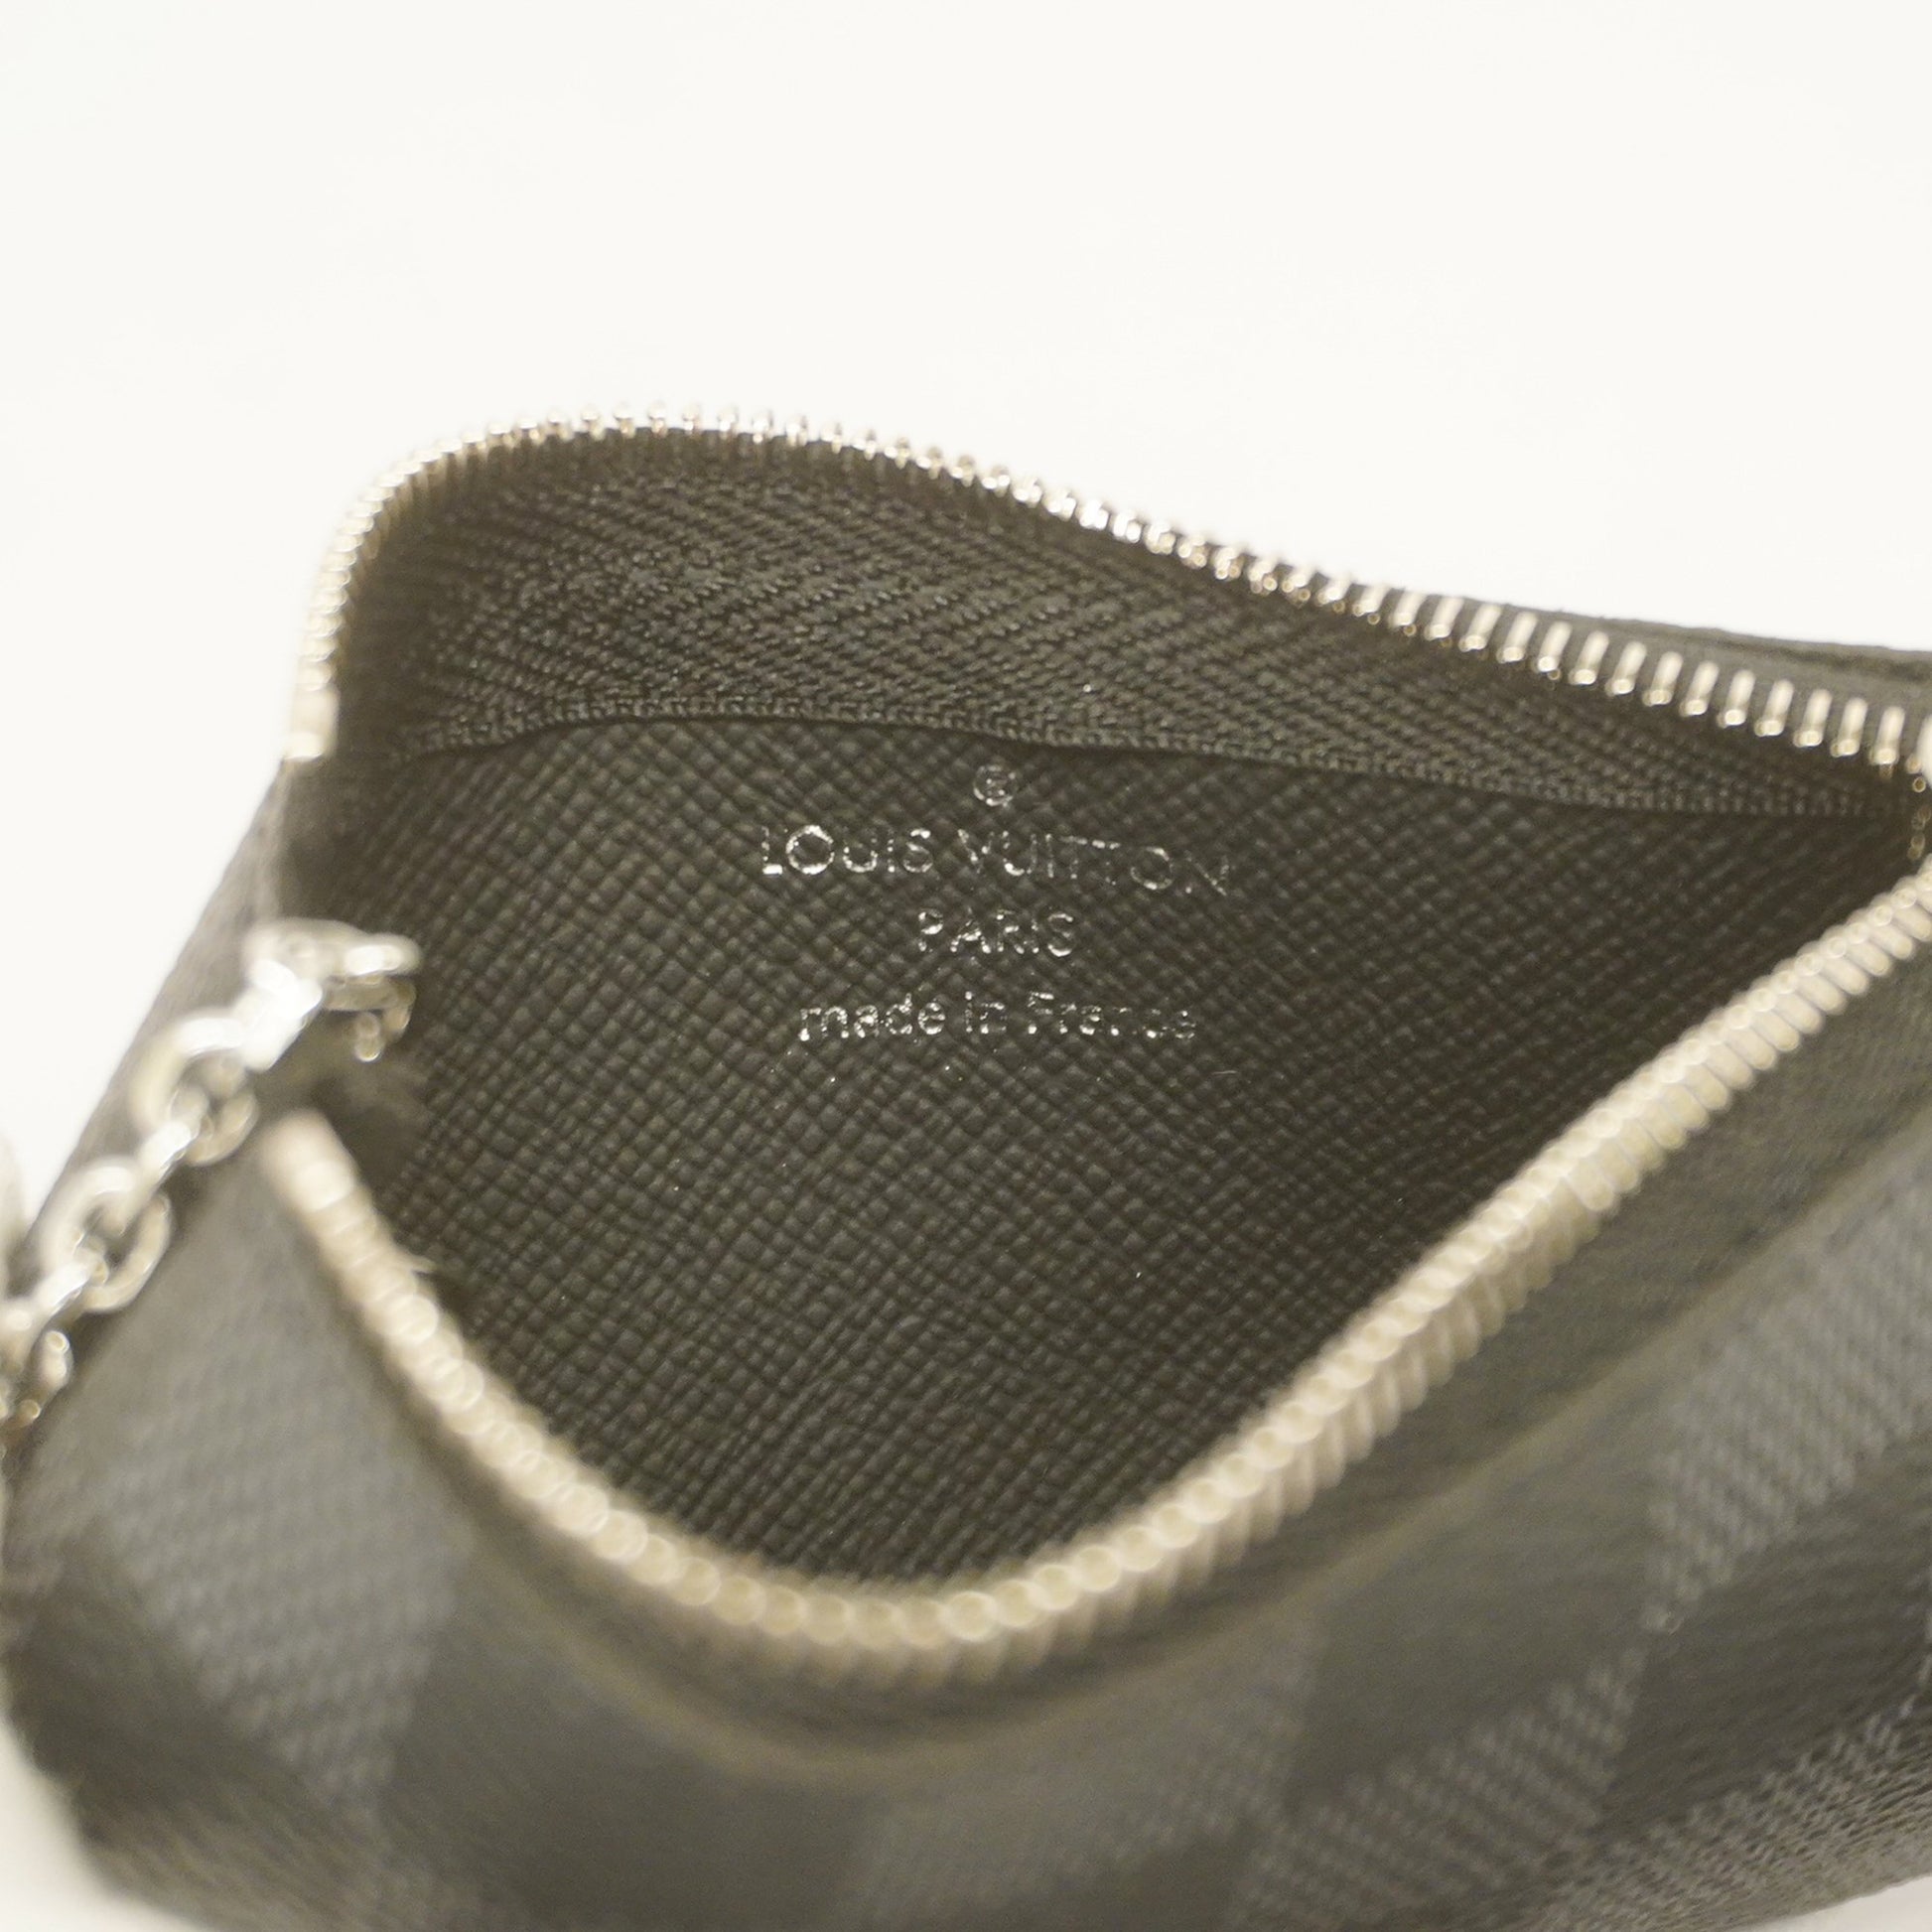 Shop Louis Vuitton DAMIER GRAPHITE Pochette cle (N60155) by